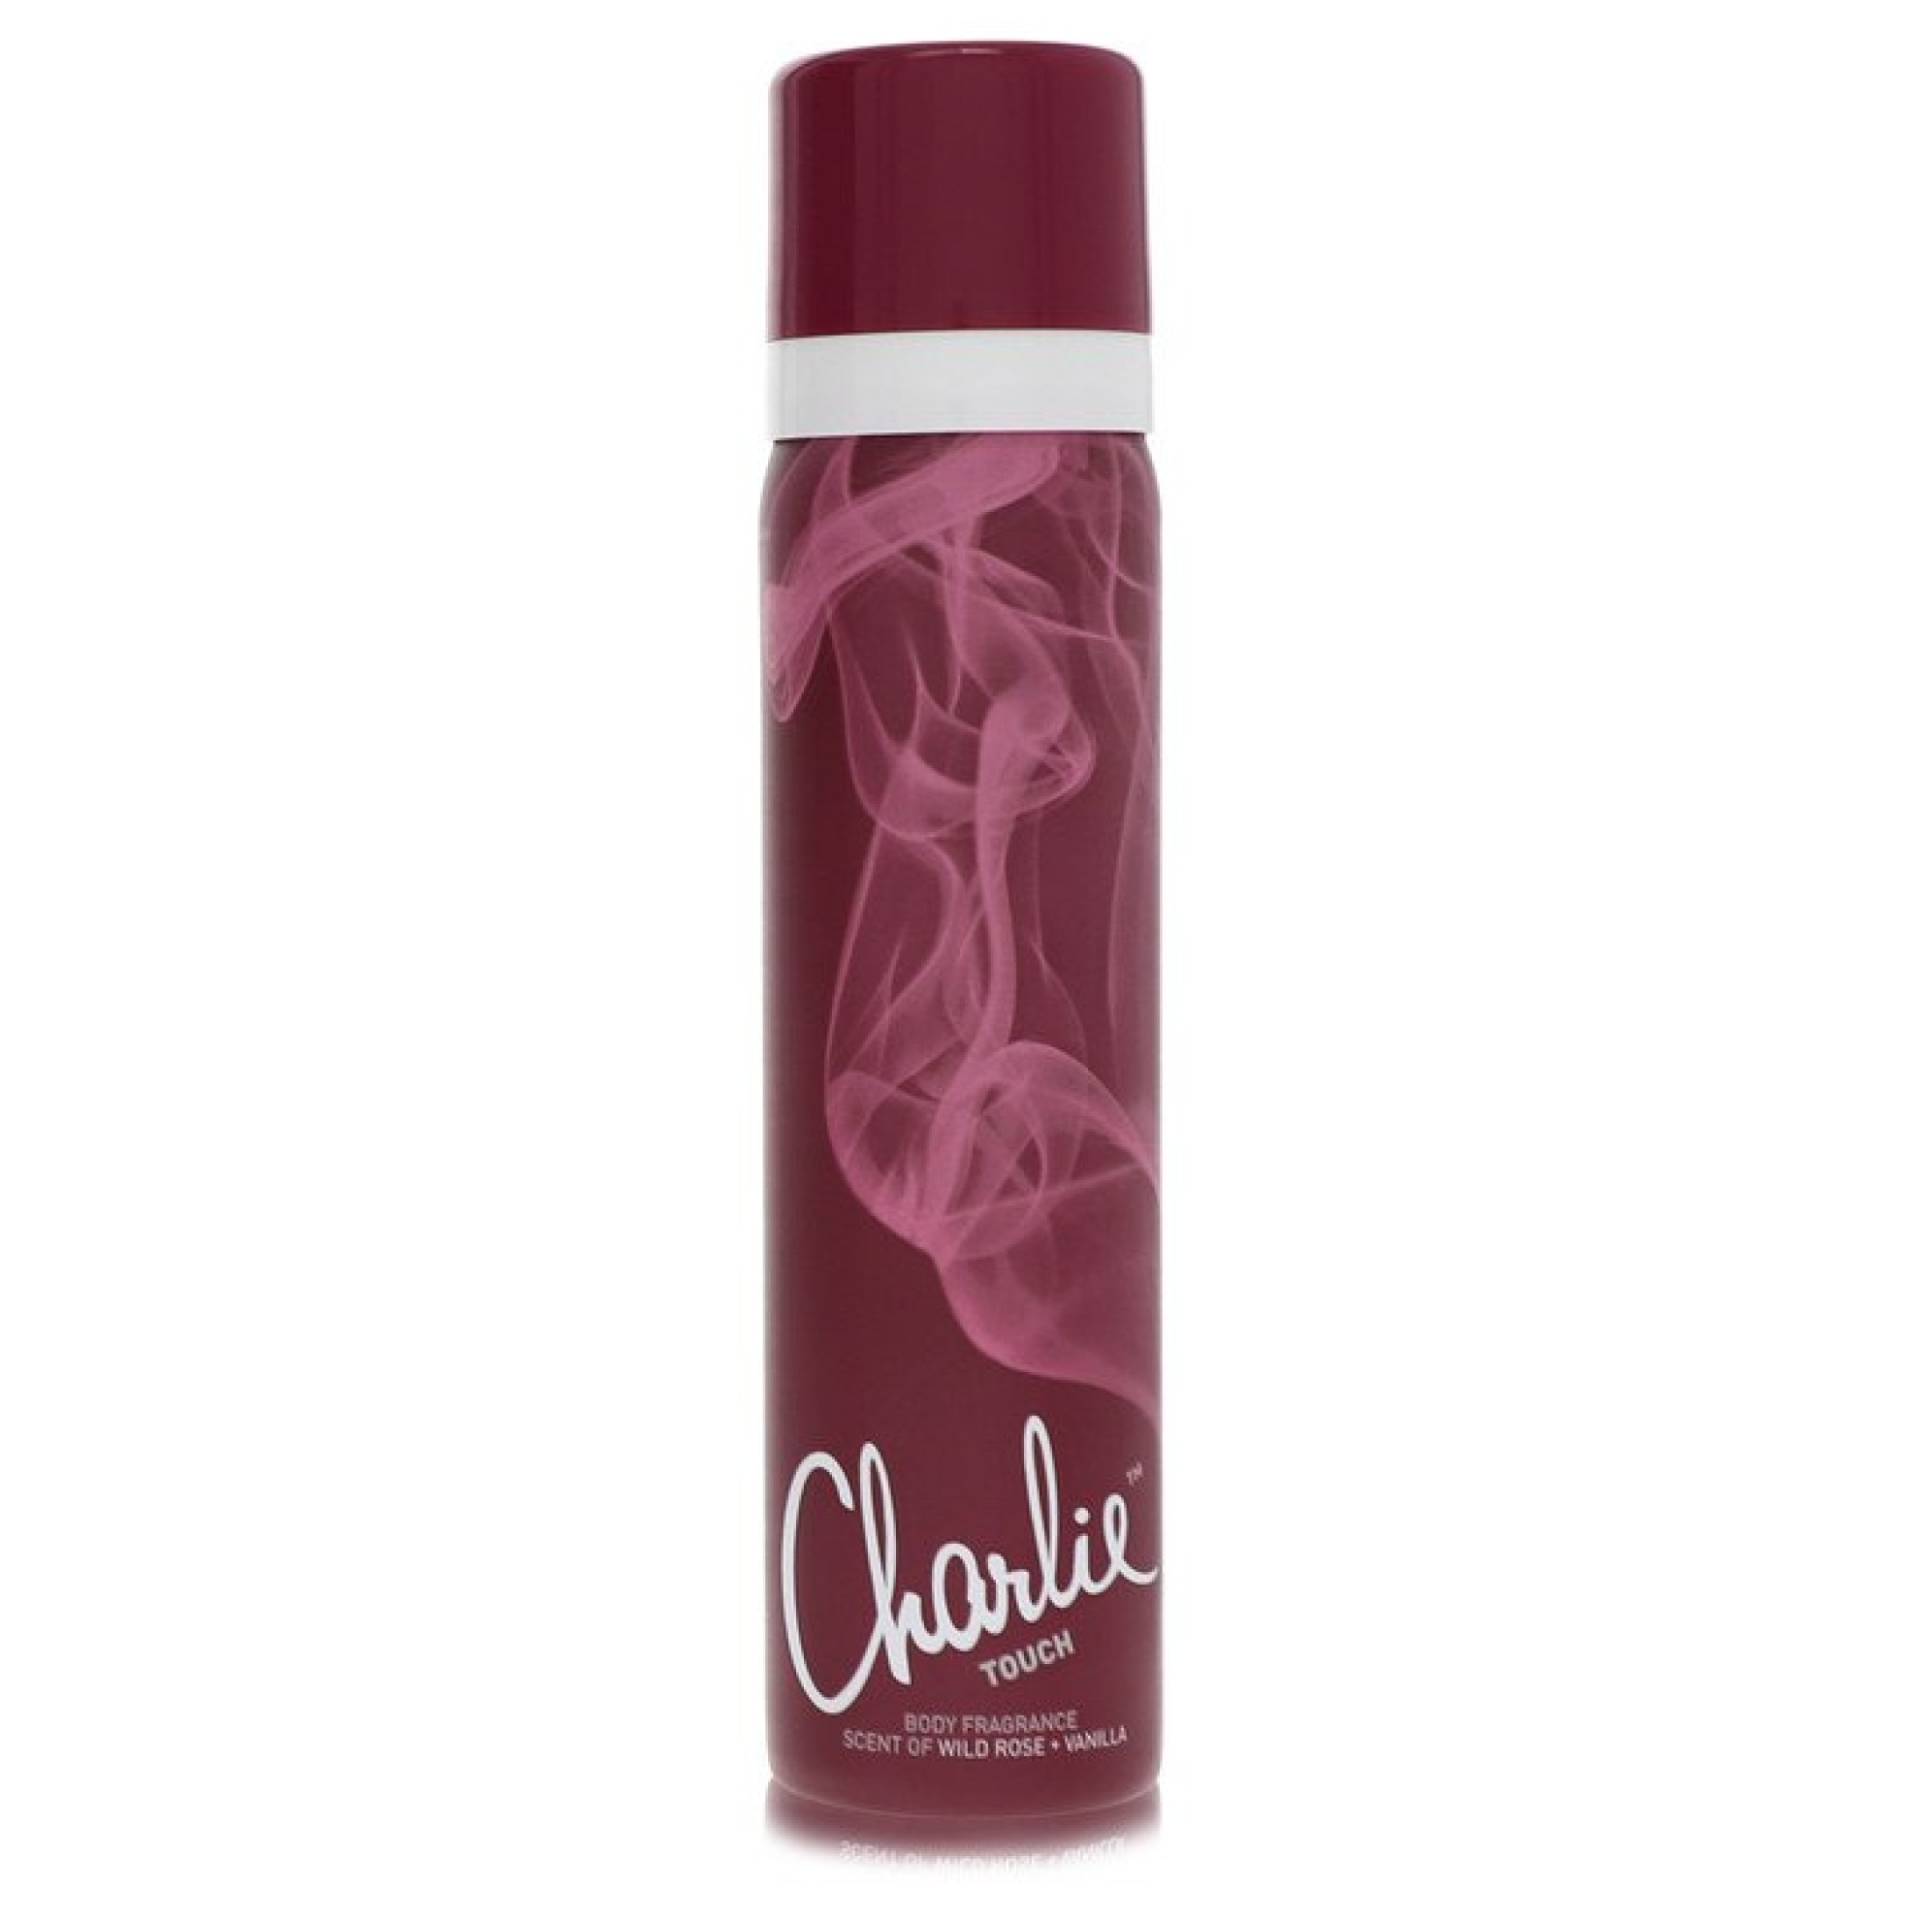 Revlon Charlie Touch Body Spray 75 ml von Revlon